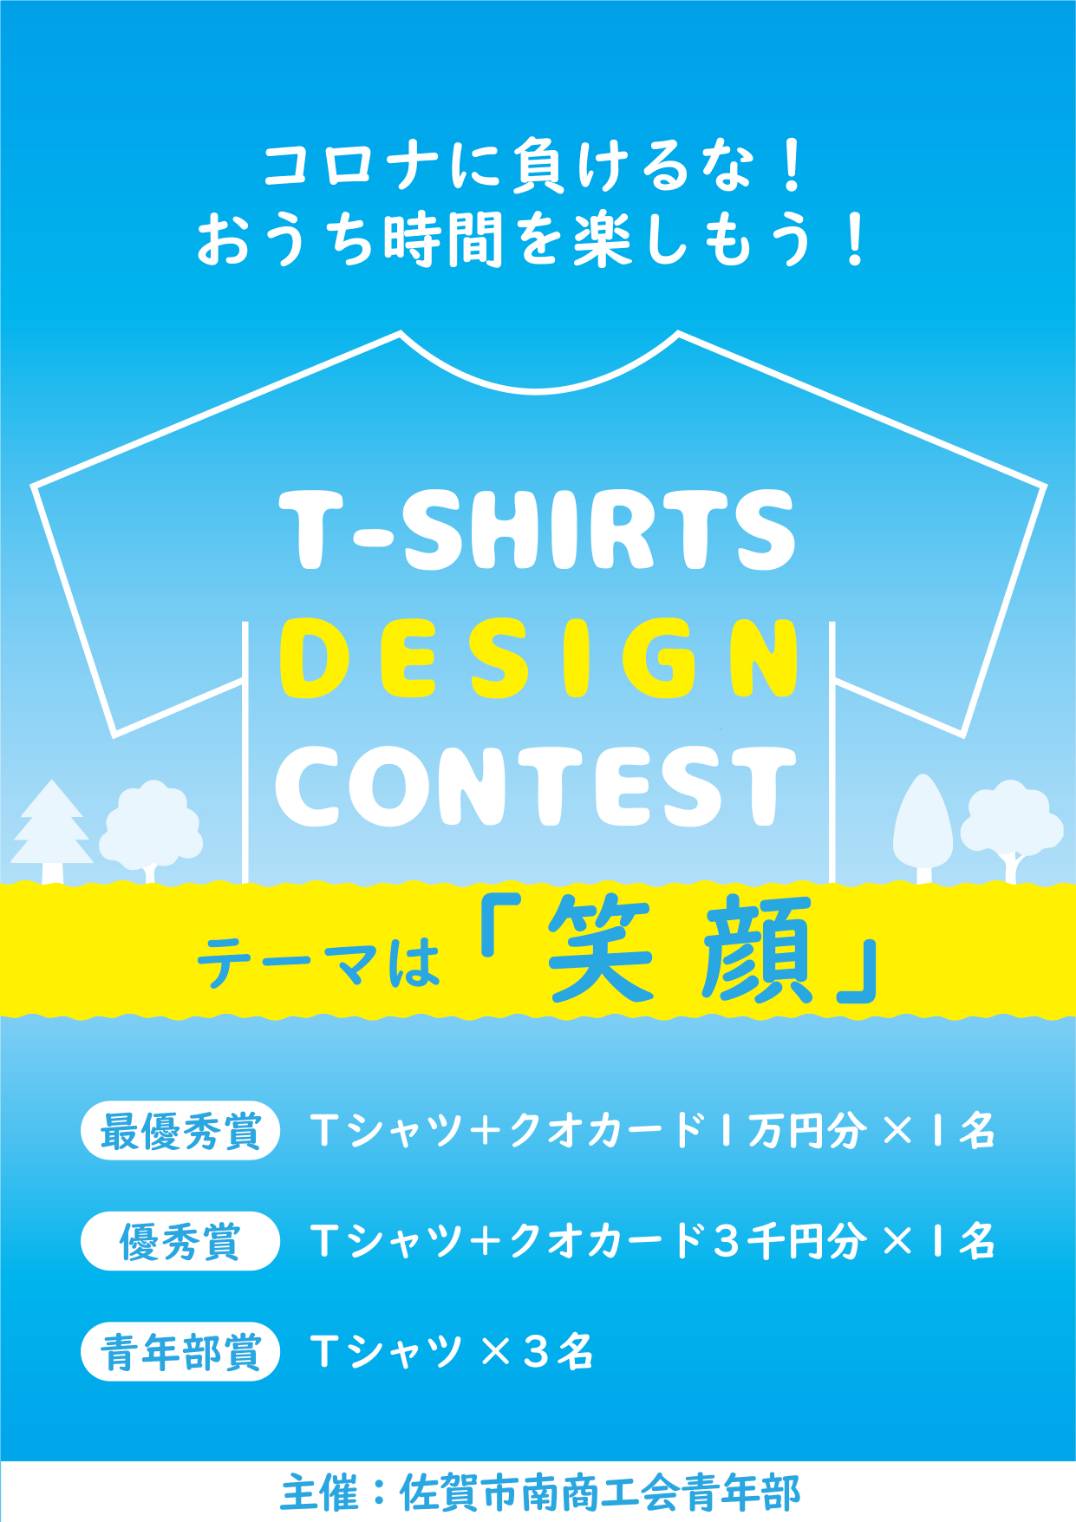 Tシャツデザインコンテスト開催